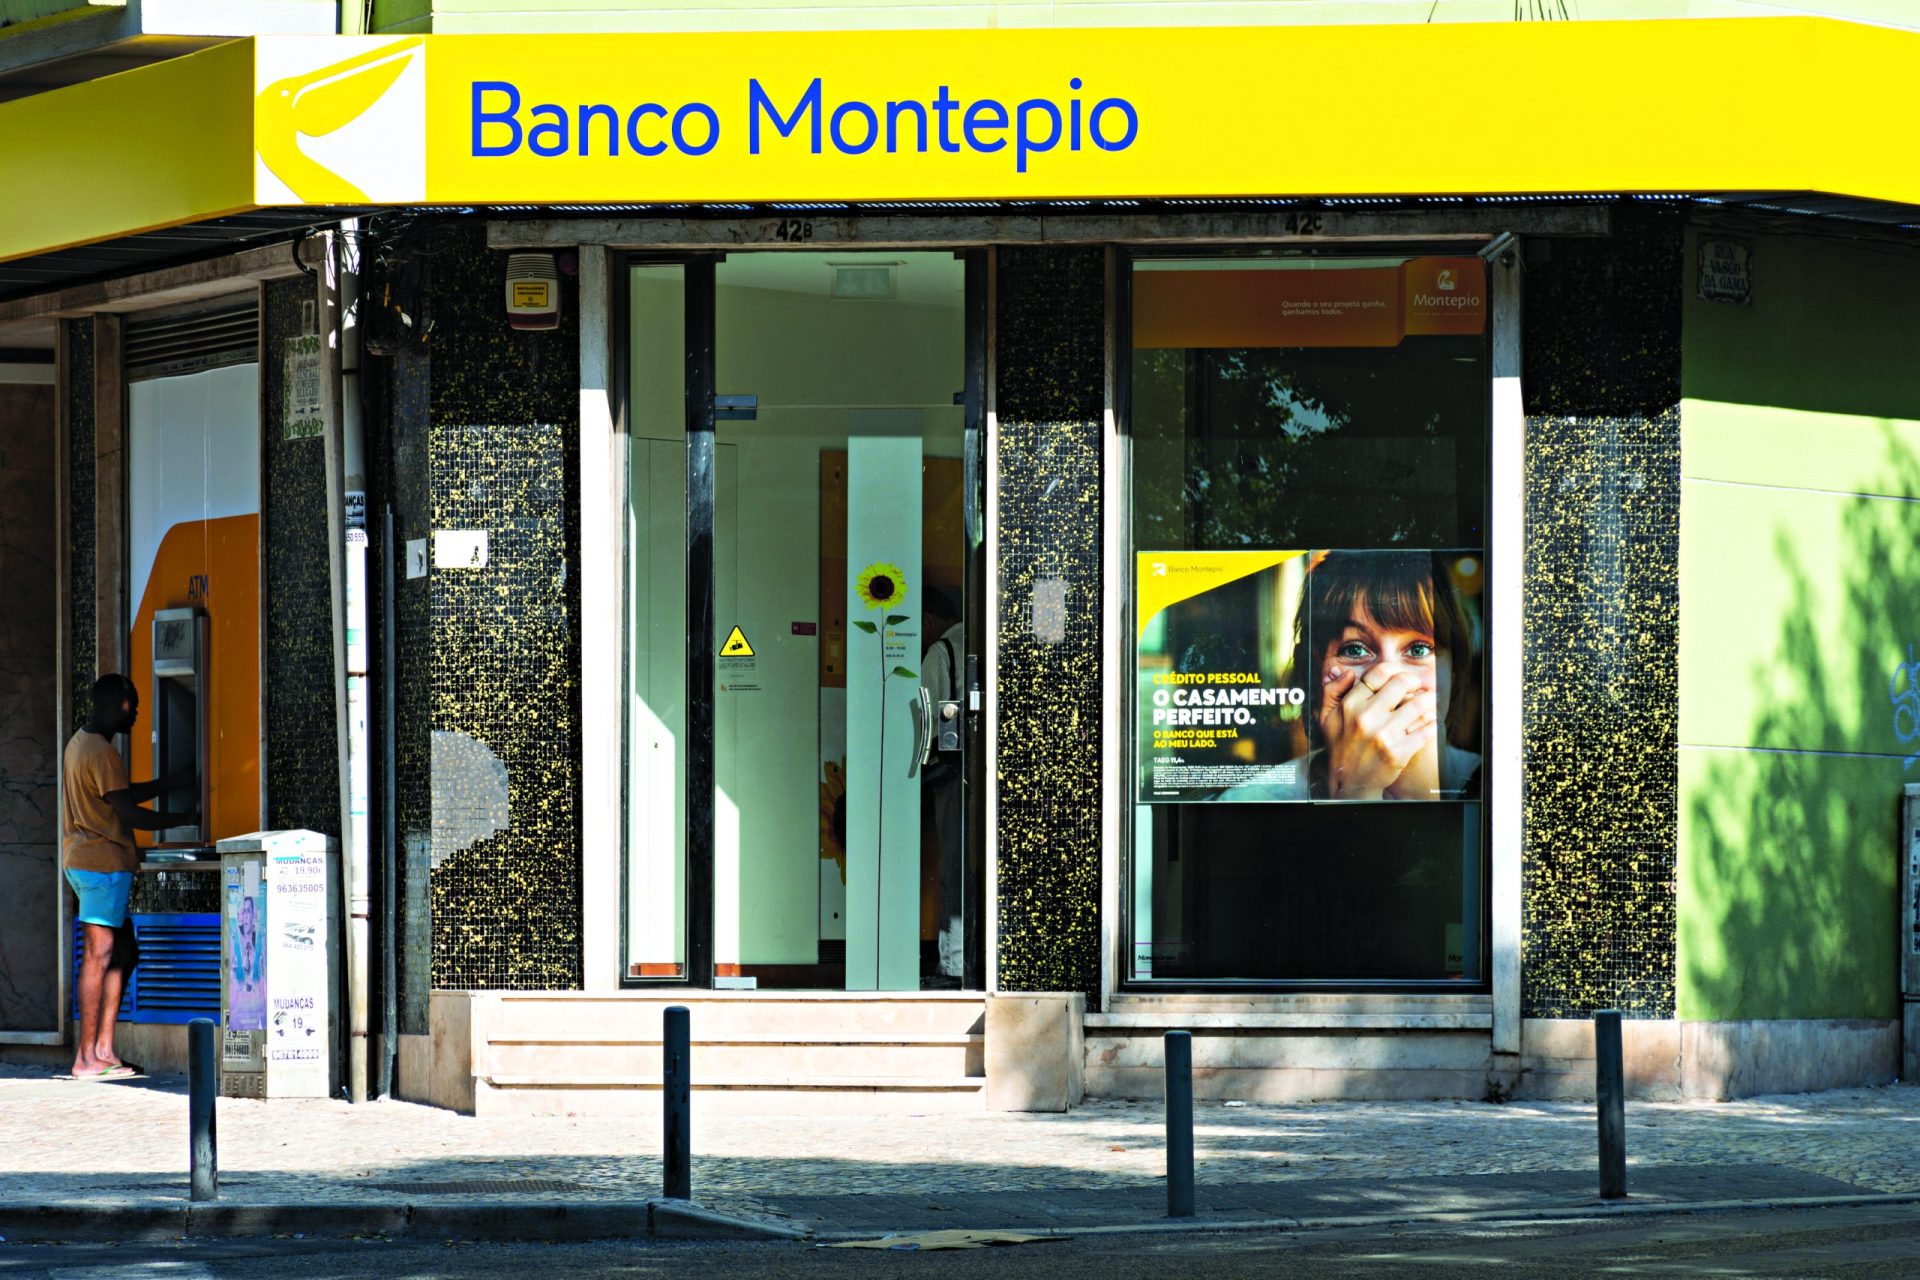 Banco Montepio encaixa 67 milhões com venda de 19% na Almina Holding